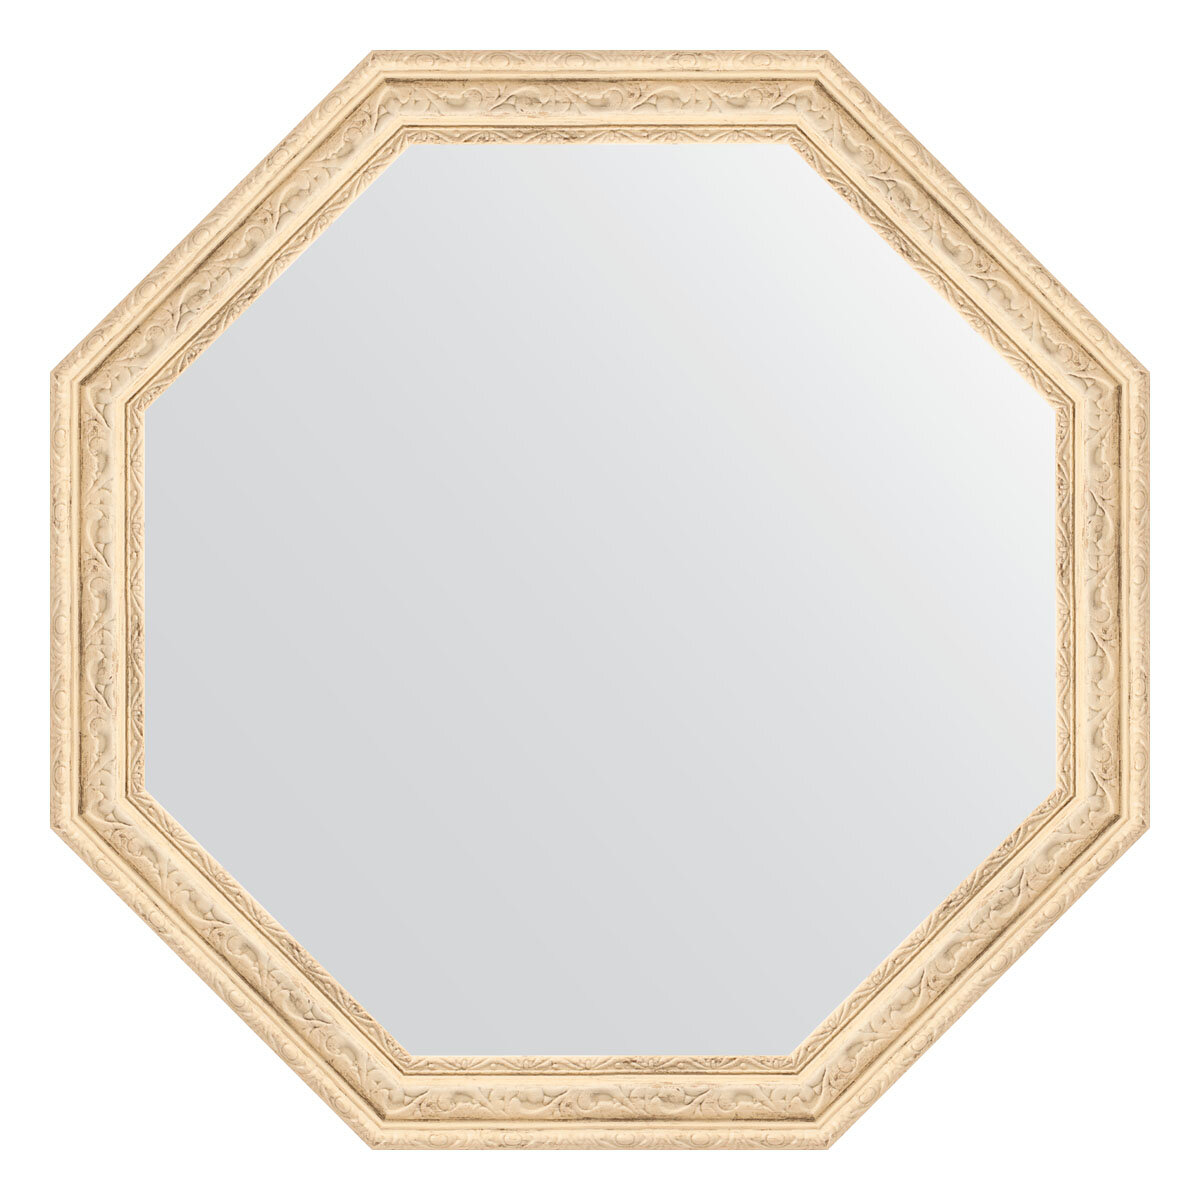 Зеркало настенное Octagon EVOFORM в багетной раме слоновая кость, 59,8х59,8 см, для гостиной, прихожей, кабинета, спальни и ванной комнаты, BY 3686